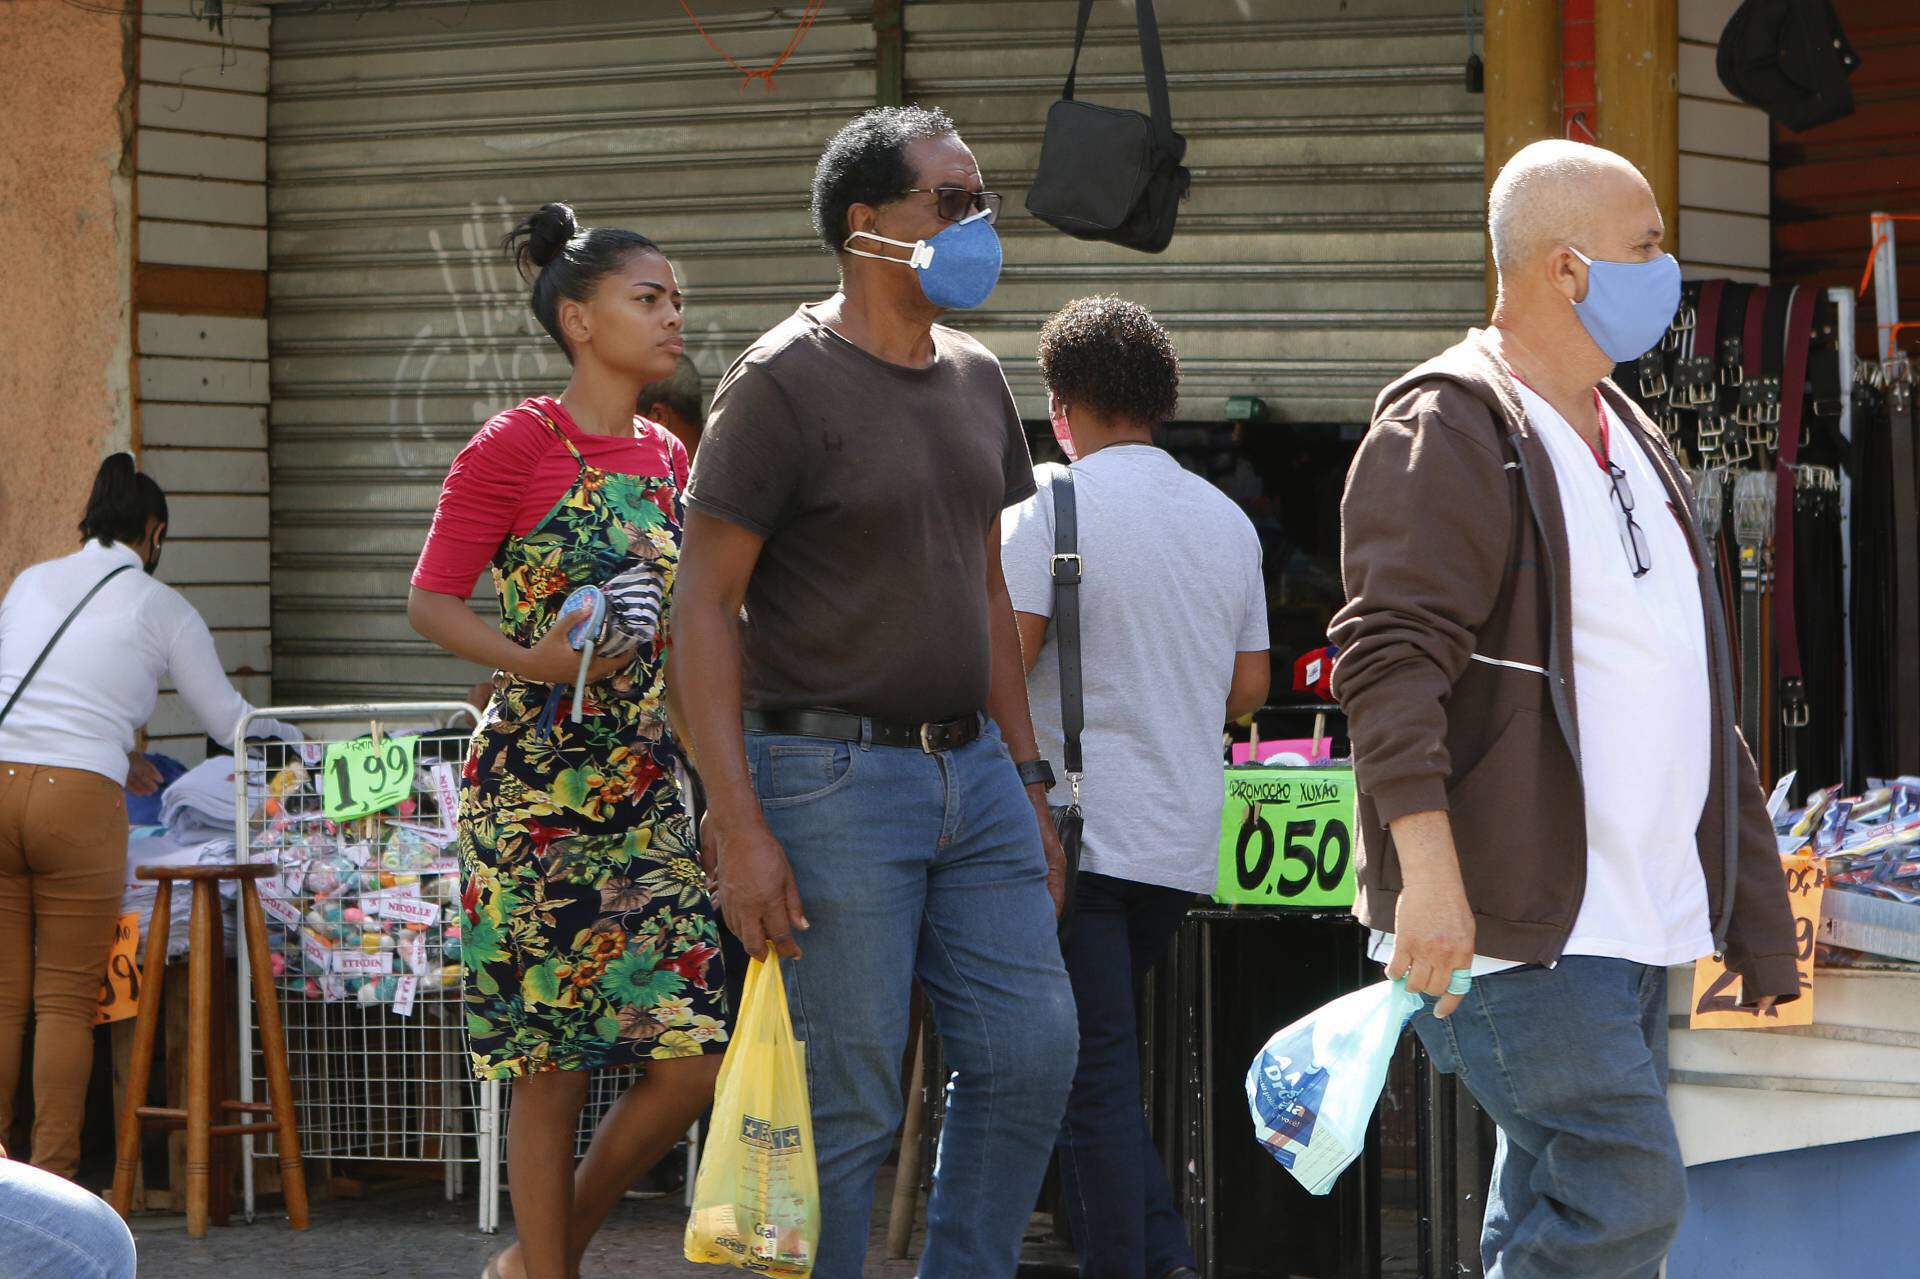 Movimentação nas ruas de Santa Cruz, Zona Oeste do Rio de Janeiro, em meio a pandemia